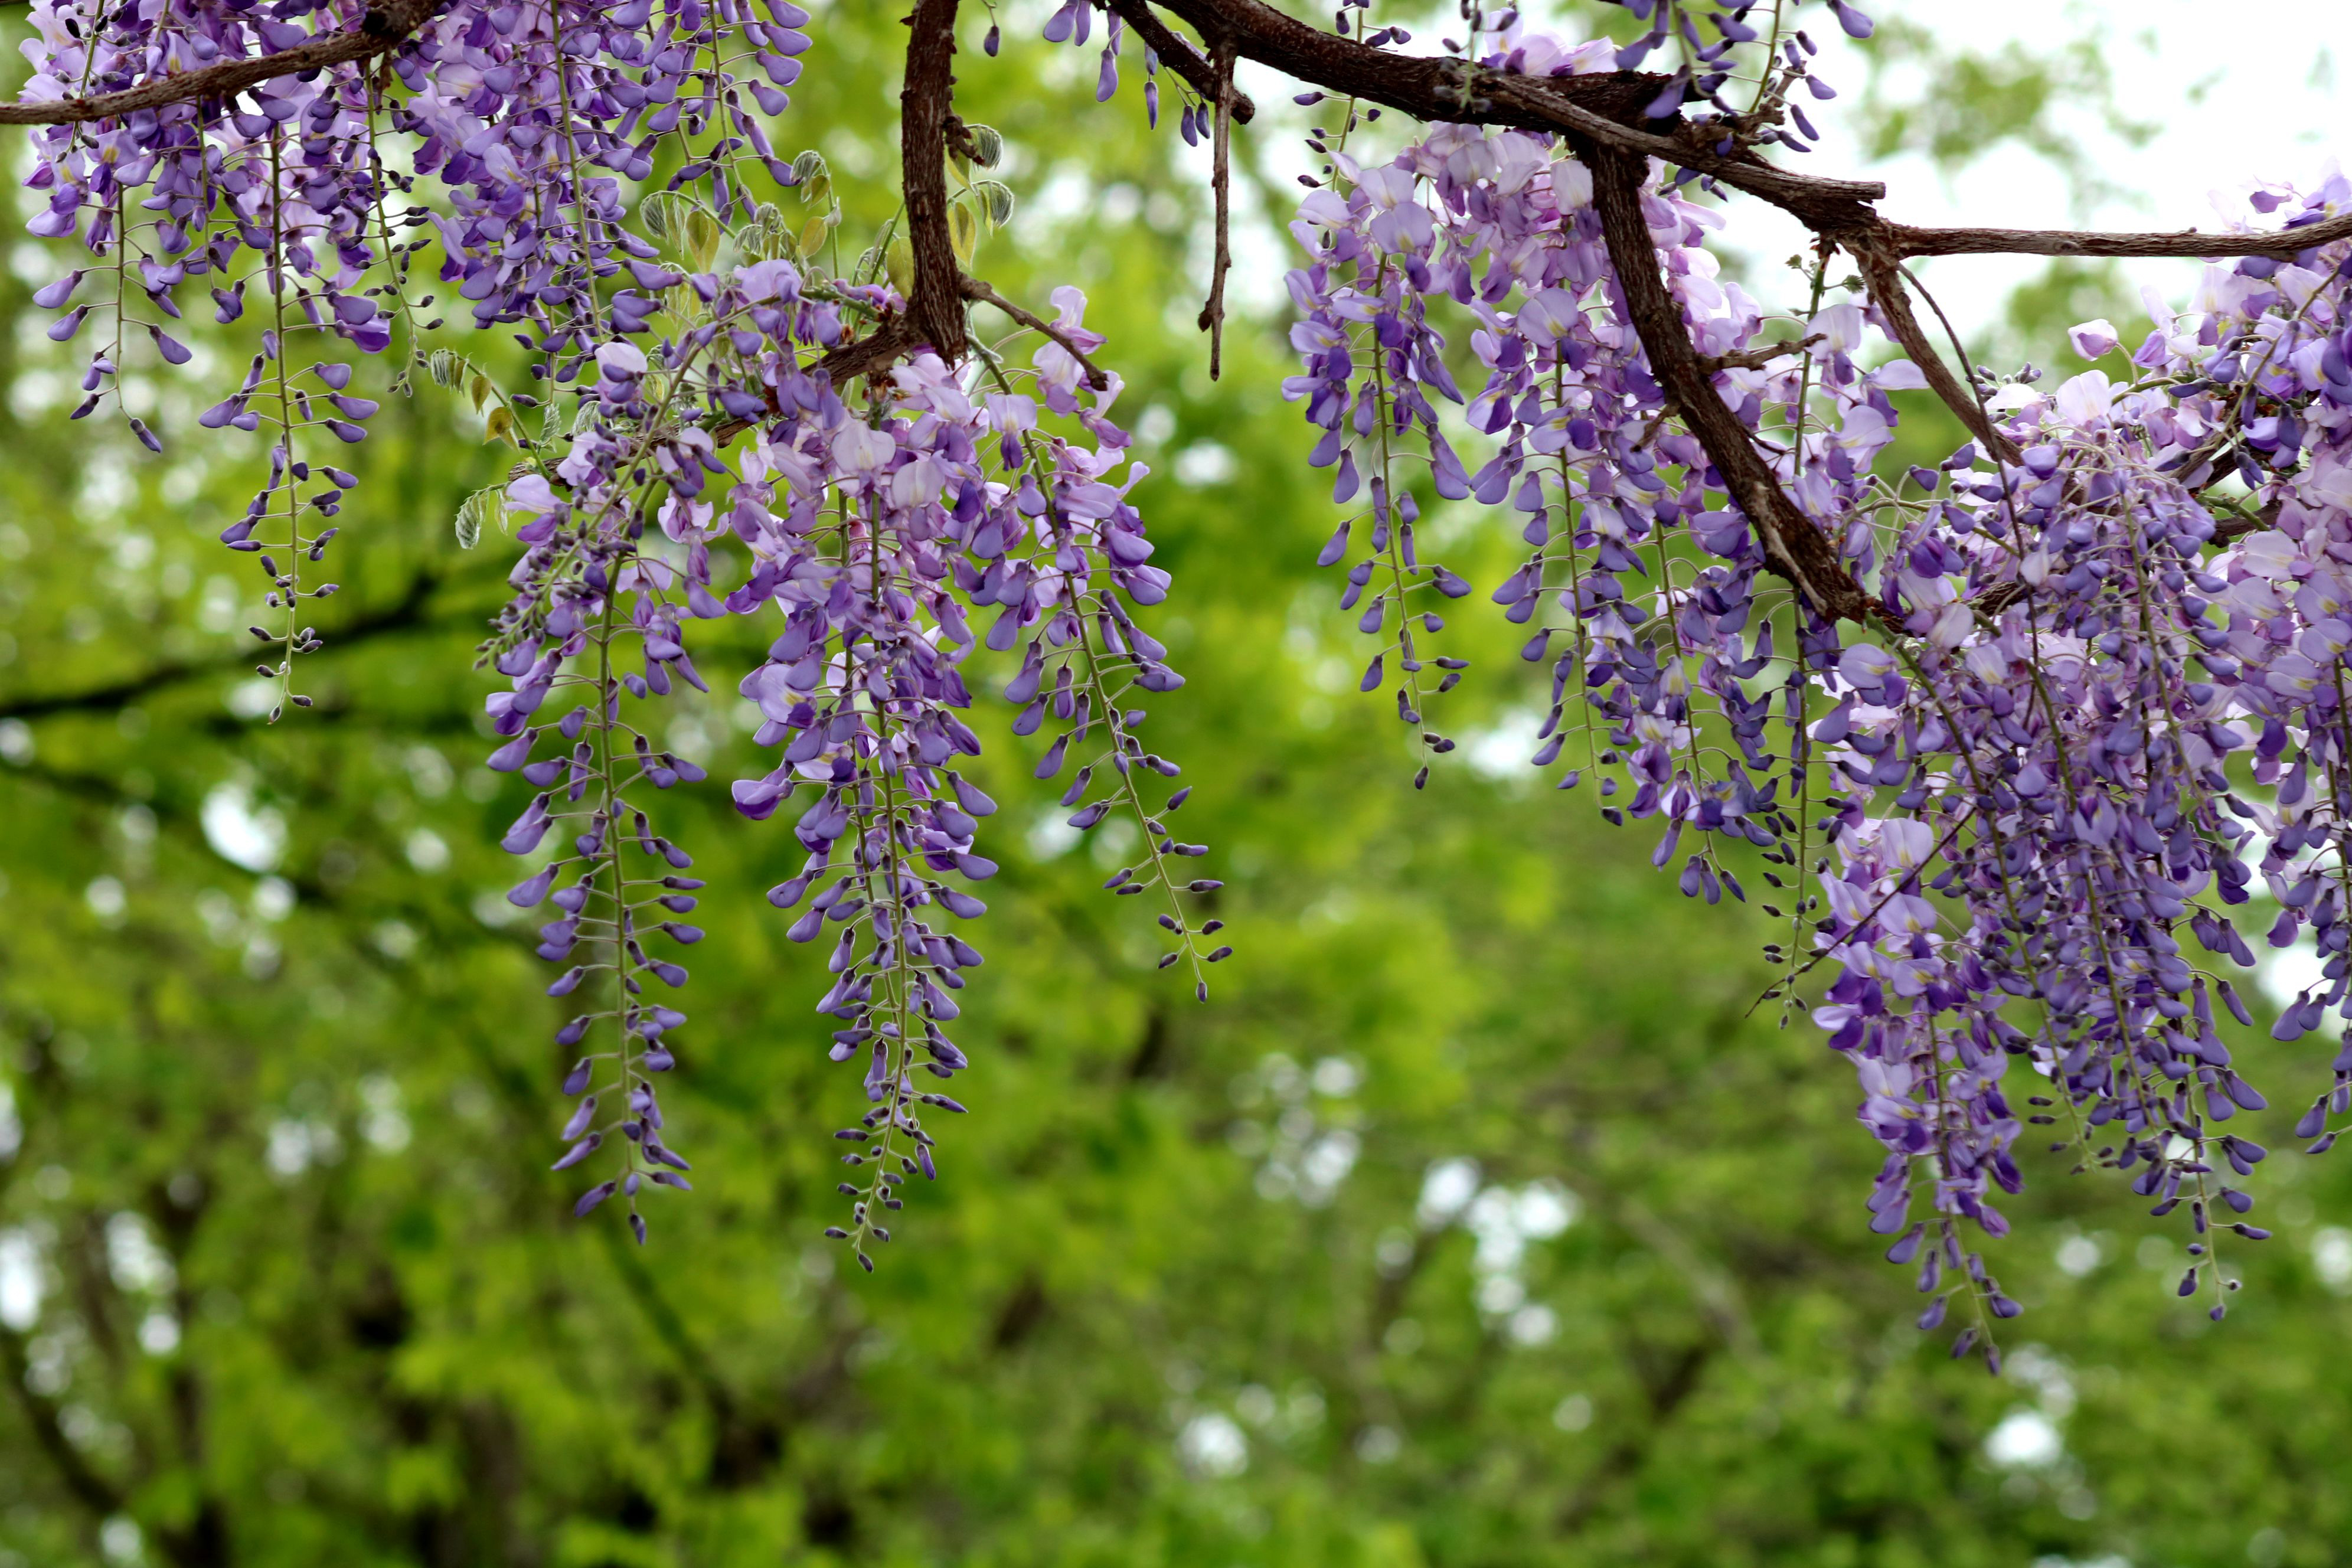 闵行古藤园里的紫藤花